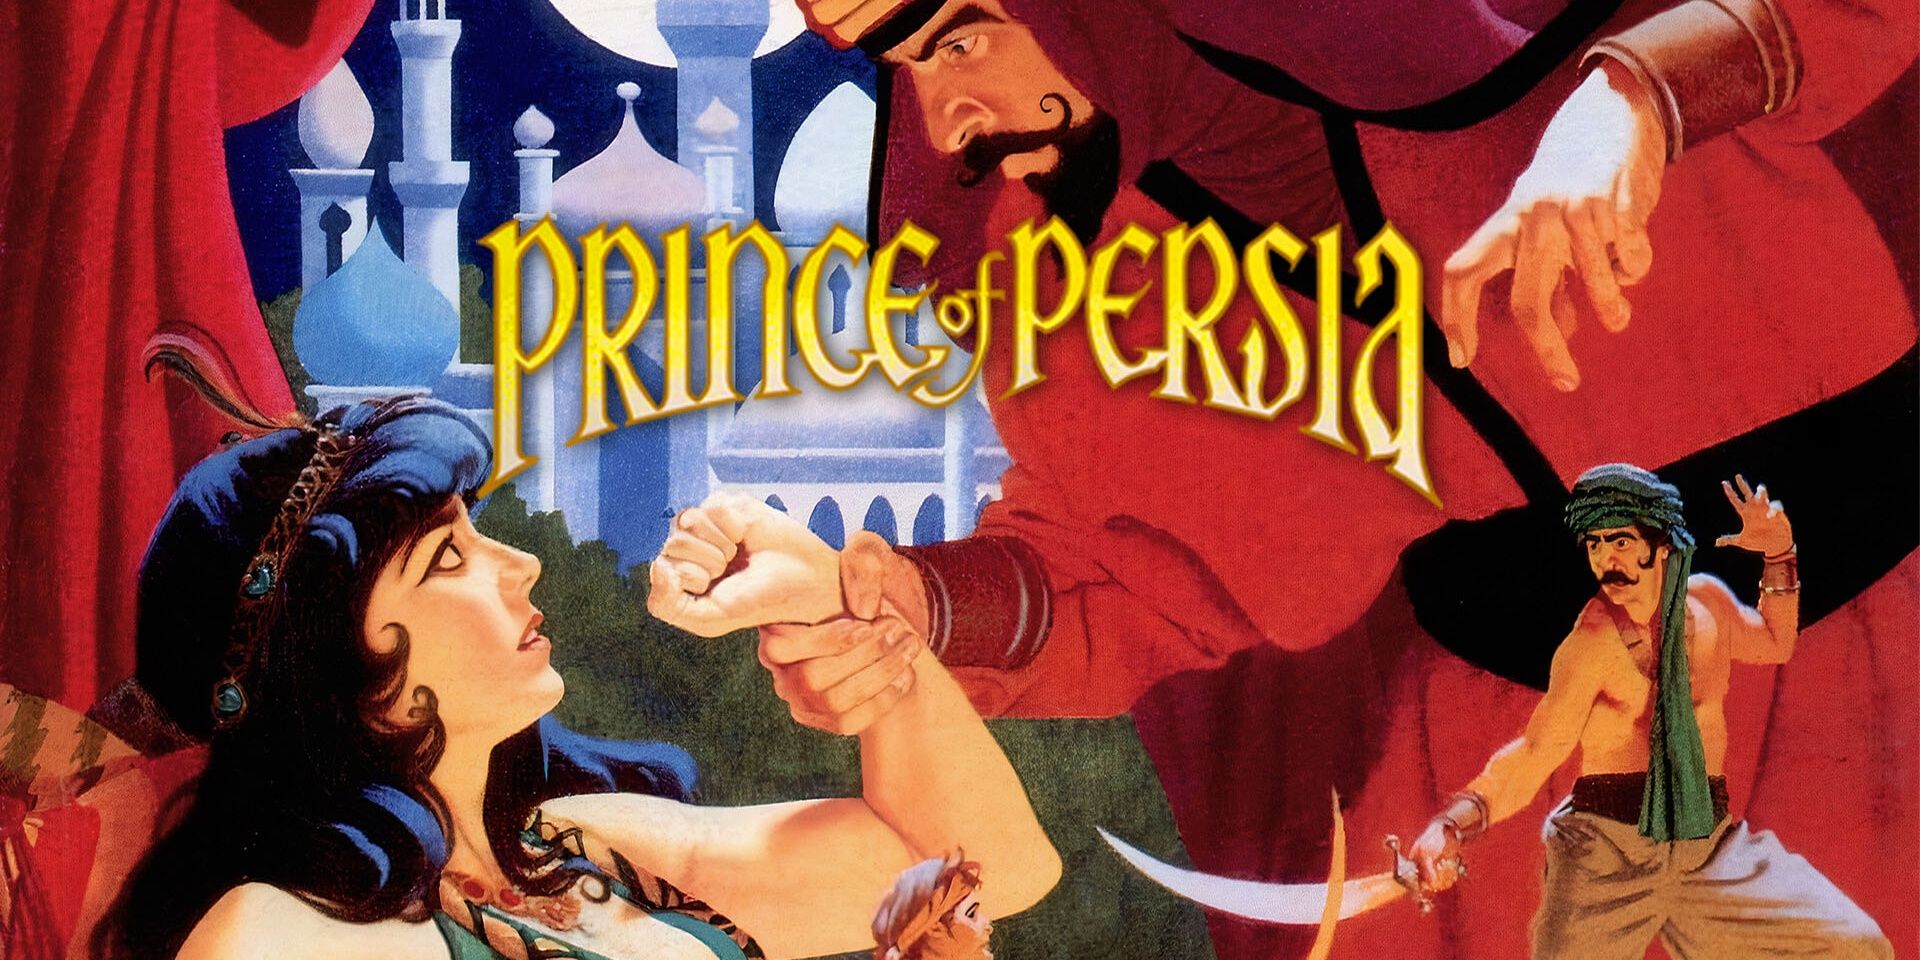 Обложка Prince of Persia